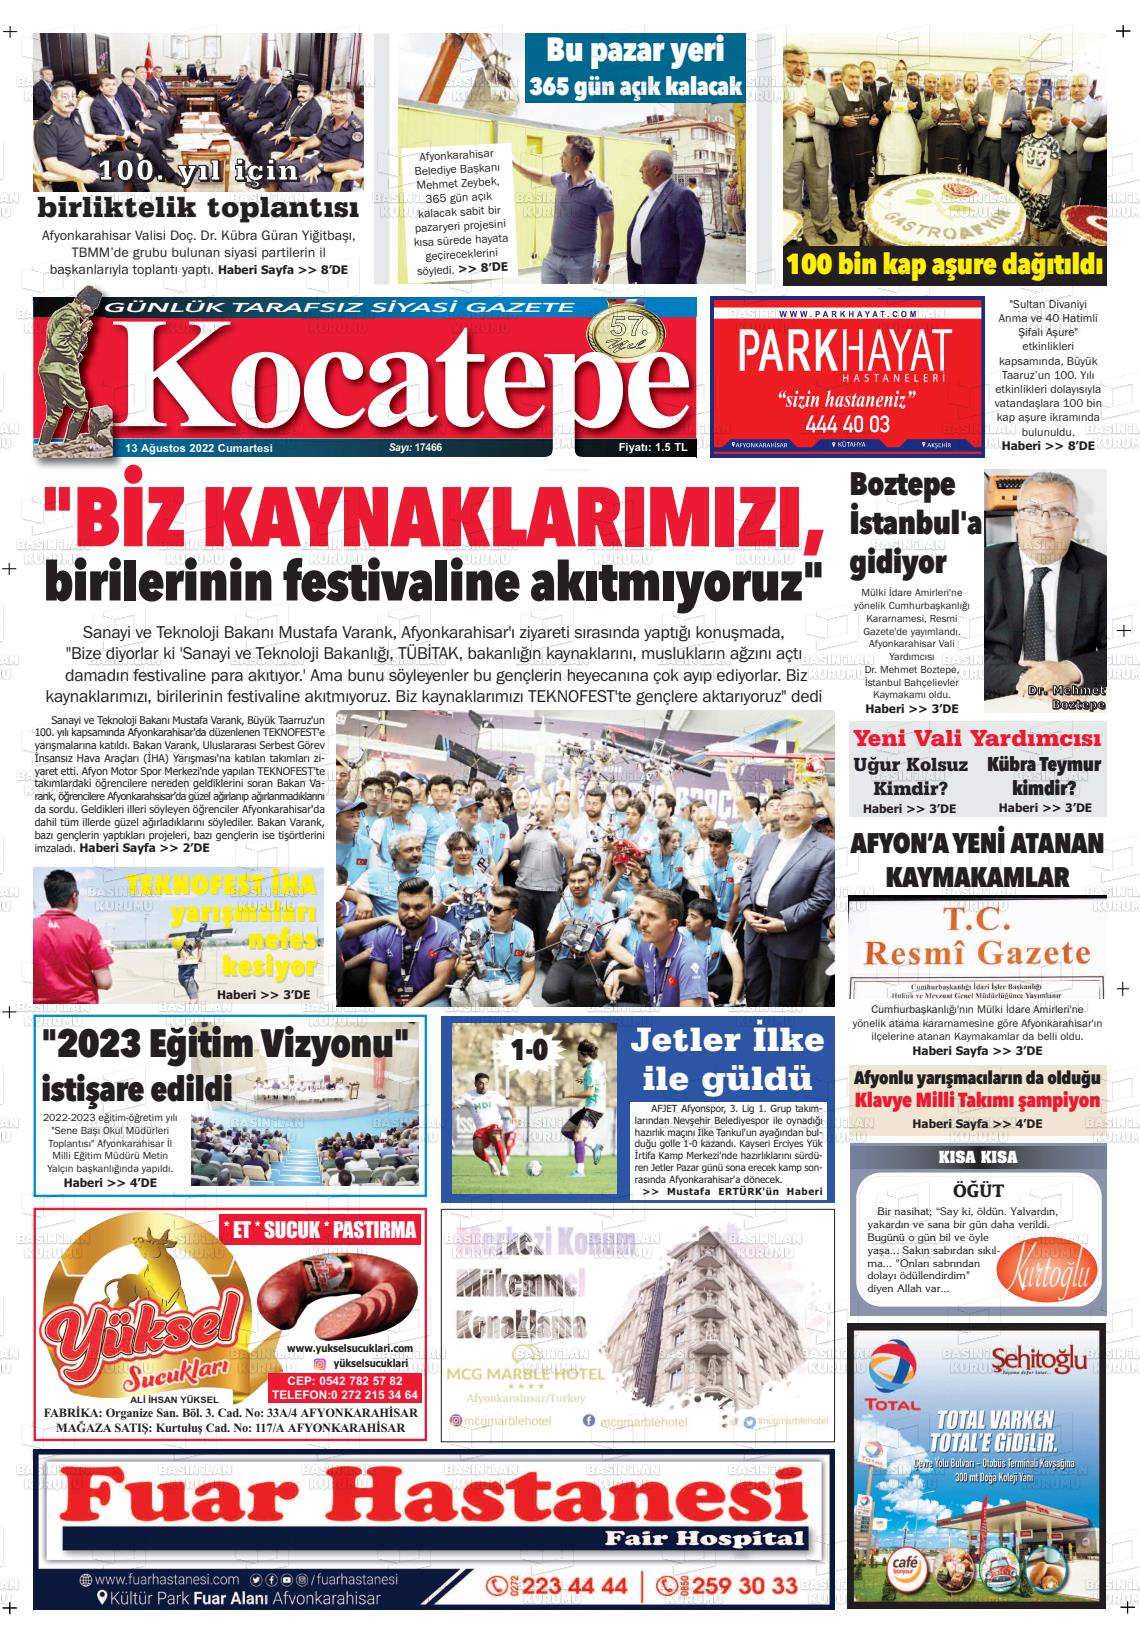 13 Ağustos 2022 Kocatepe Gazete Manşeti